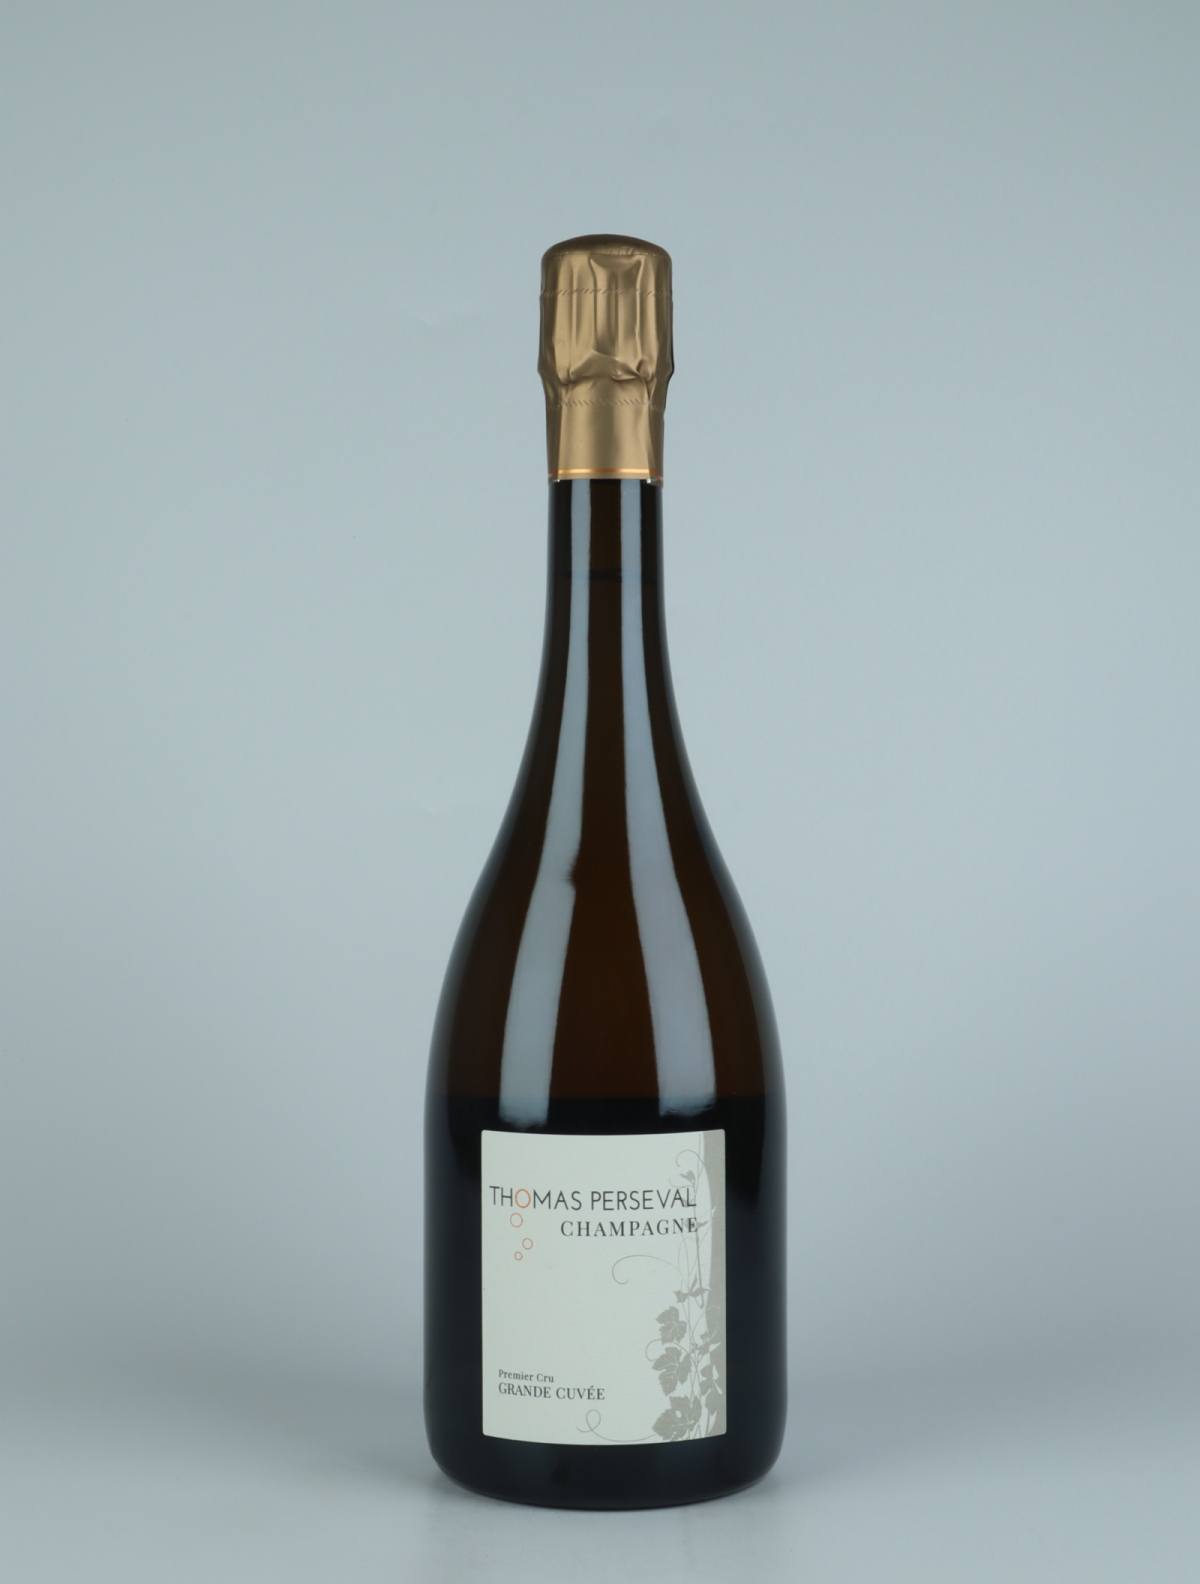 En flaske 2015 Grande Cuvée 1. Cru Mousserende fra Thomas Perseval, Champagne i Frankrig